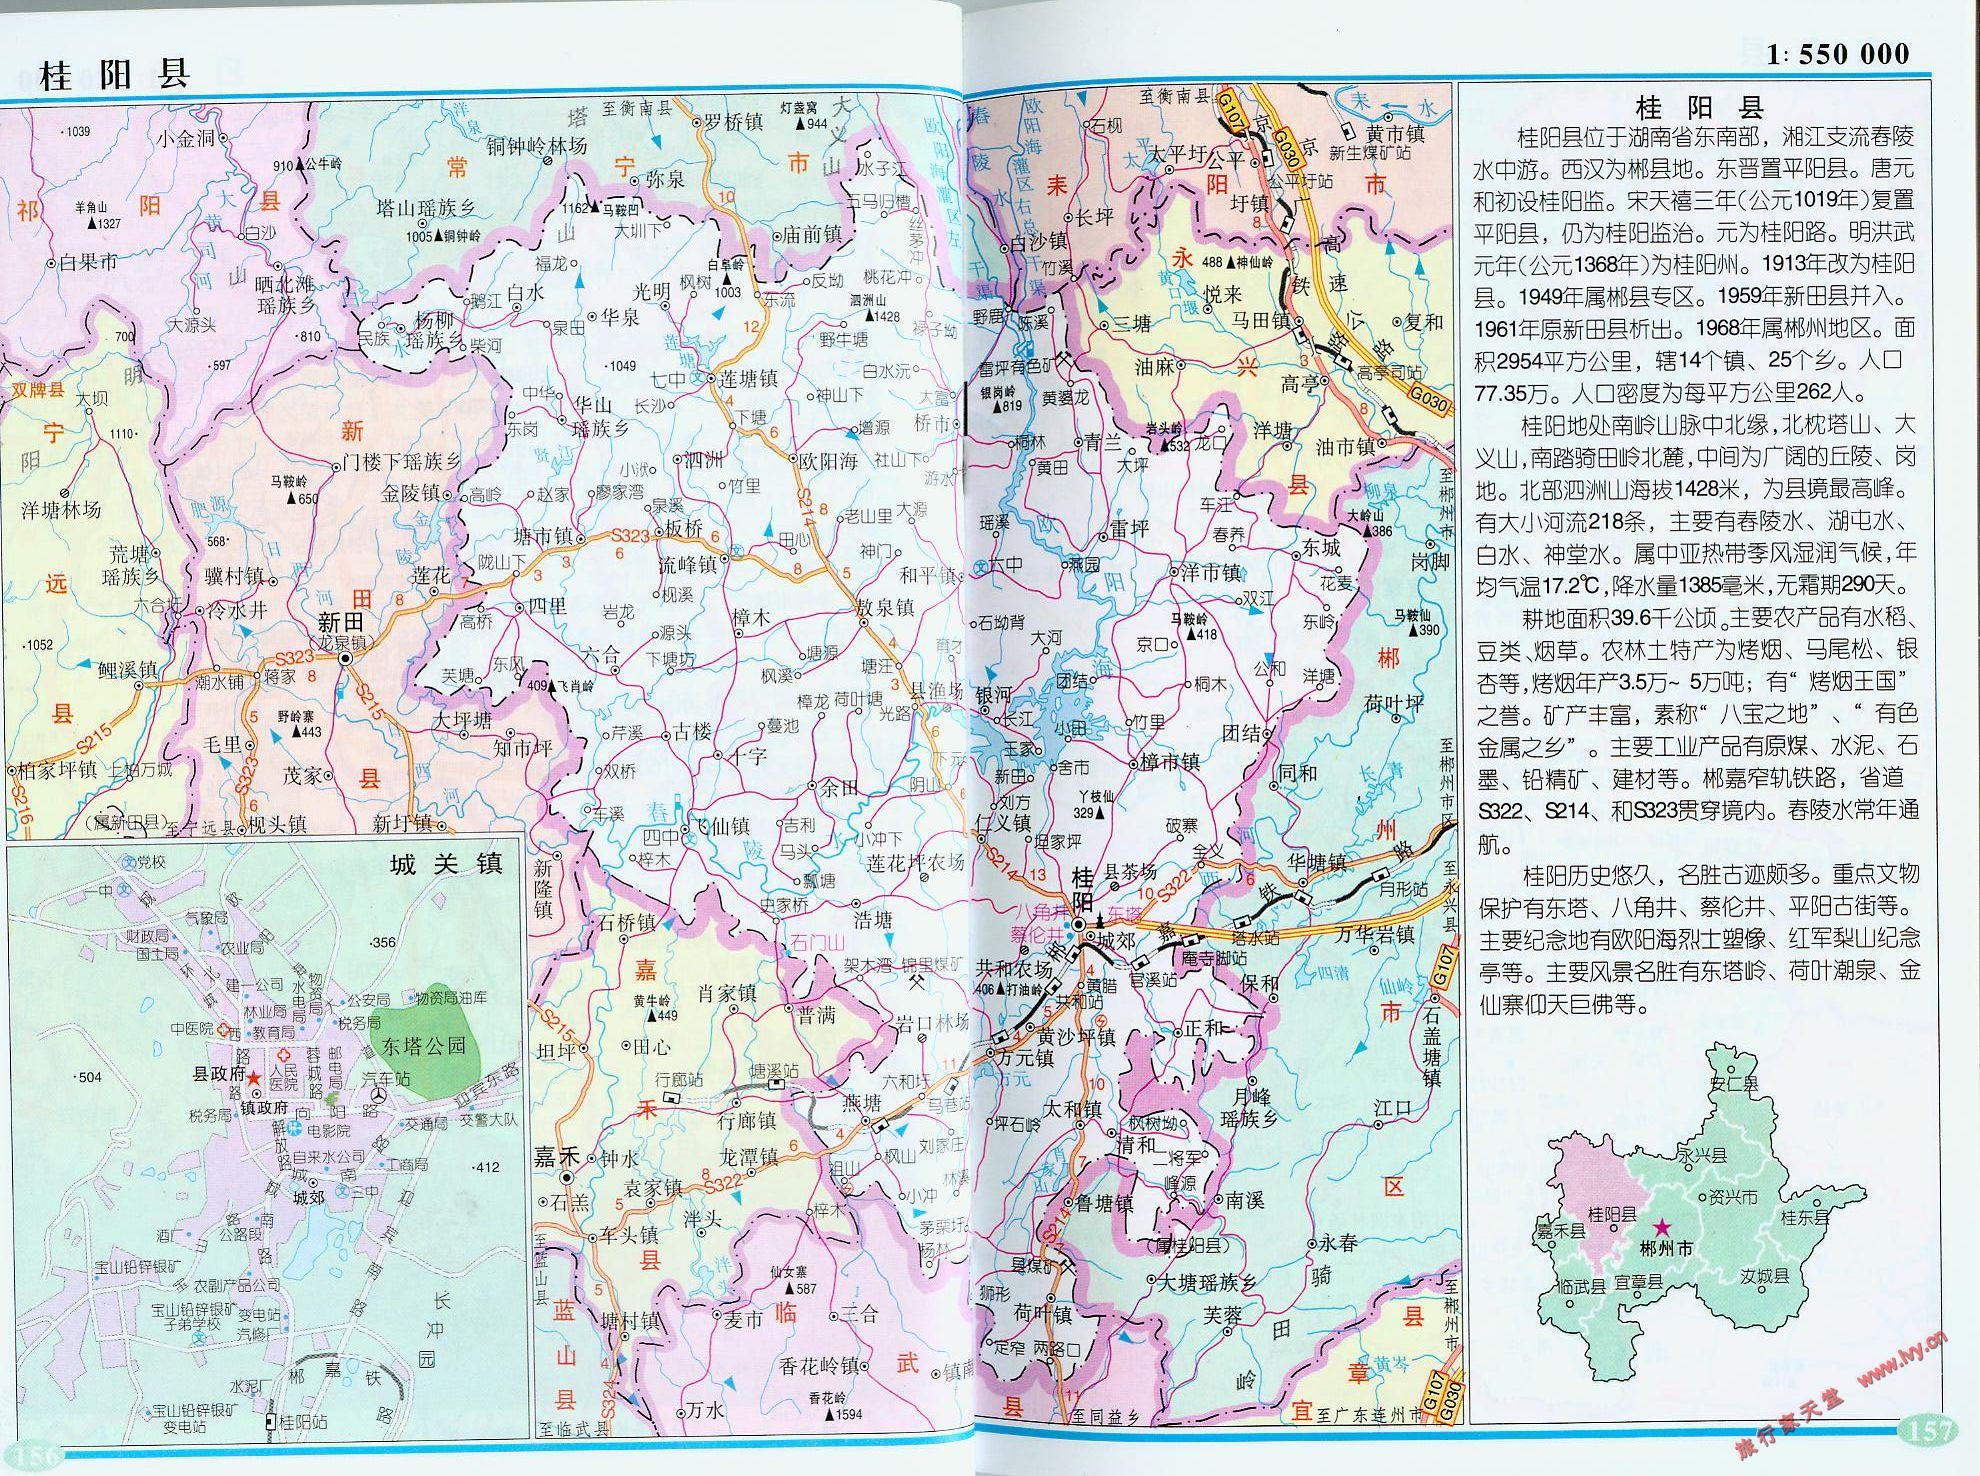 地图窝 中国 湖南 郴州  (长按地图可以放大,保存,分享)